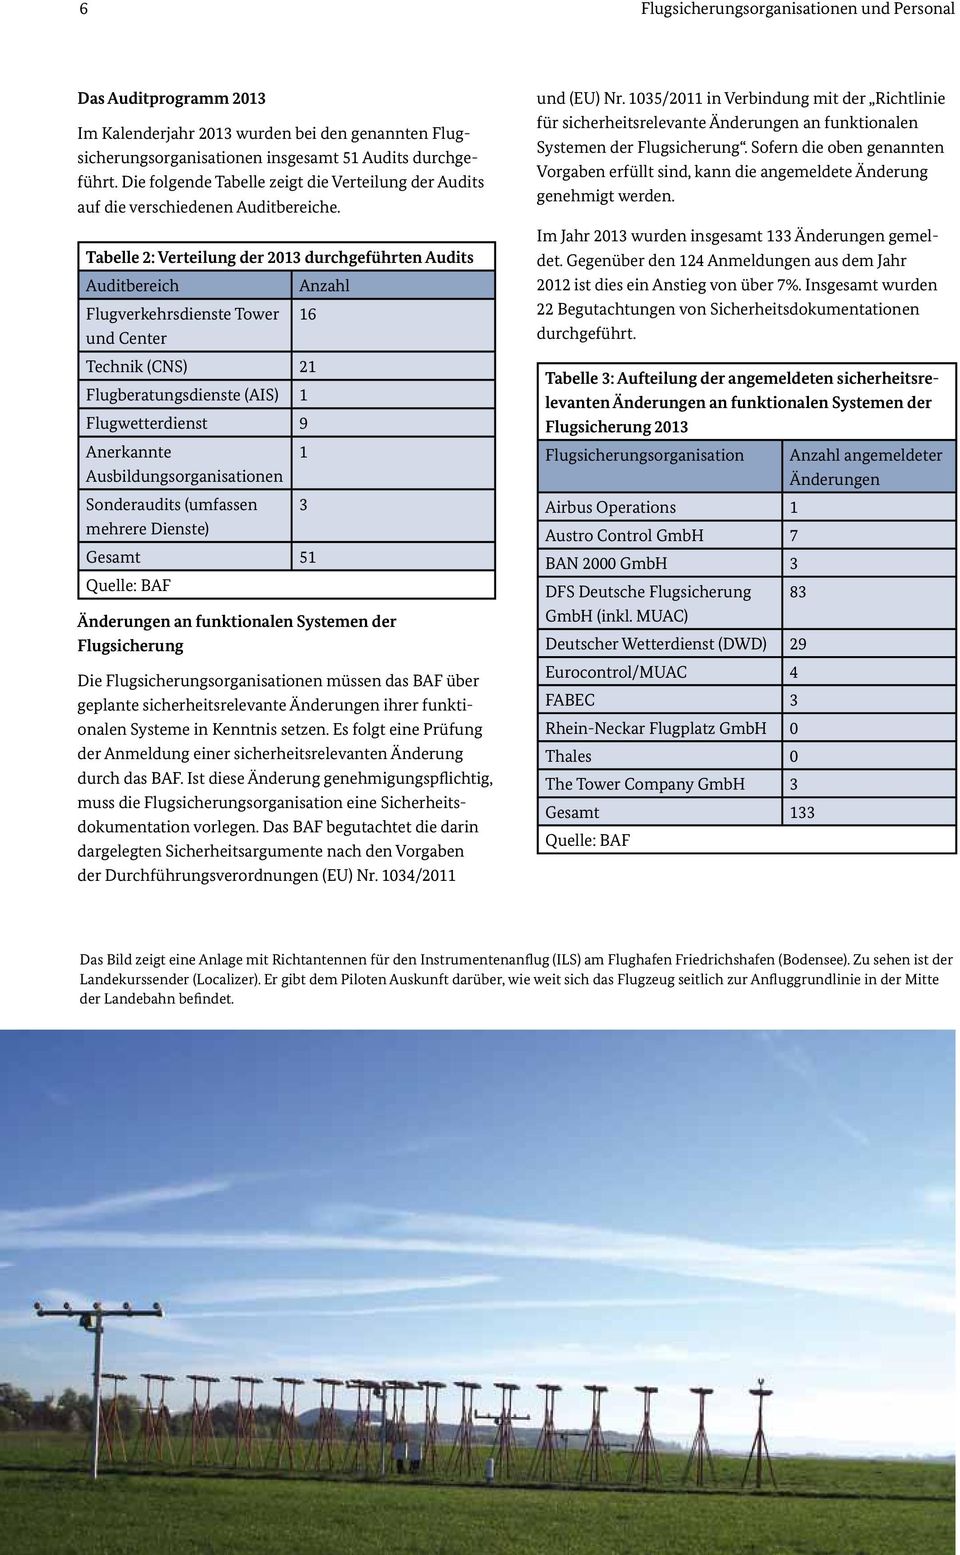 Tabelle 2: Verteilung der 2013 durchgeführten Audits Auditbereich Flugverkehrsdienste Tower und Center Anzahl 16 Technik (CNS) 21 Flugberatungsdienste (AIS) 1 Flugwetterdienst 9 Anerkannte